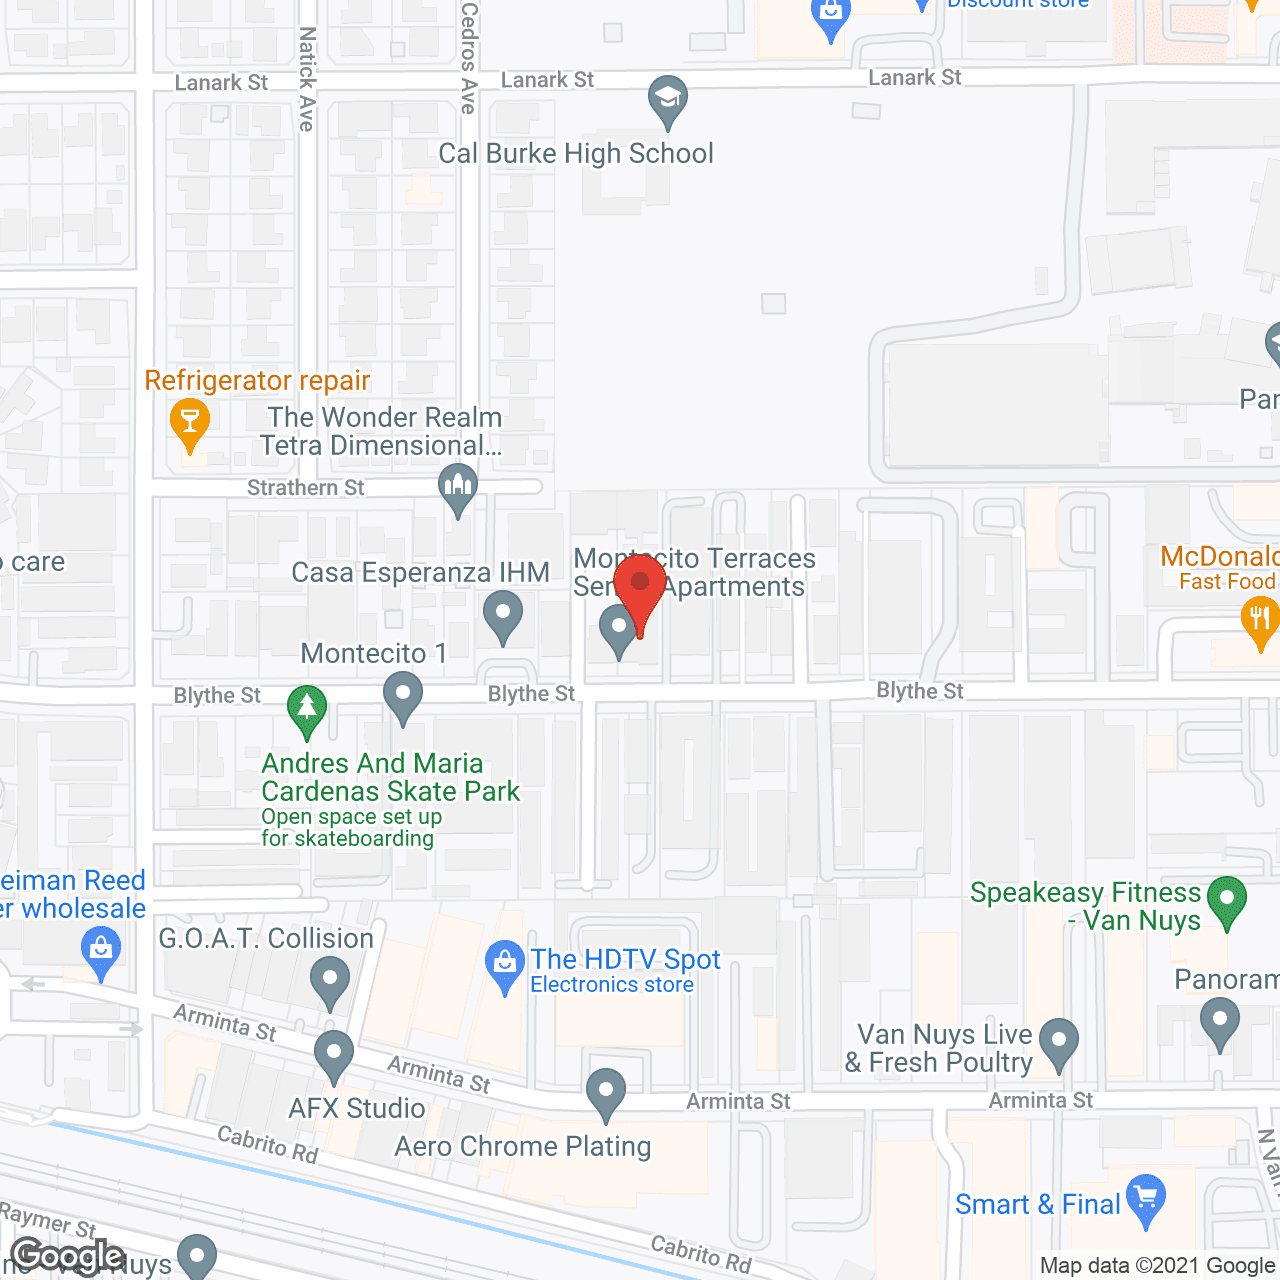 Montecito Terraces in google map